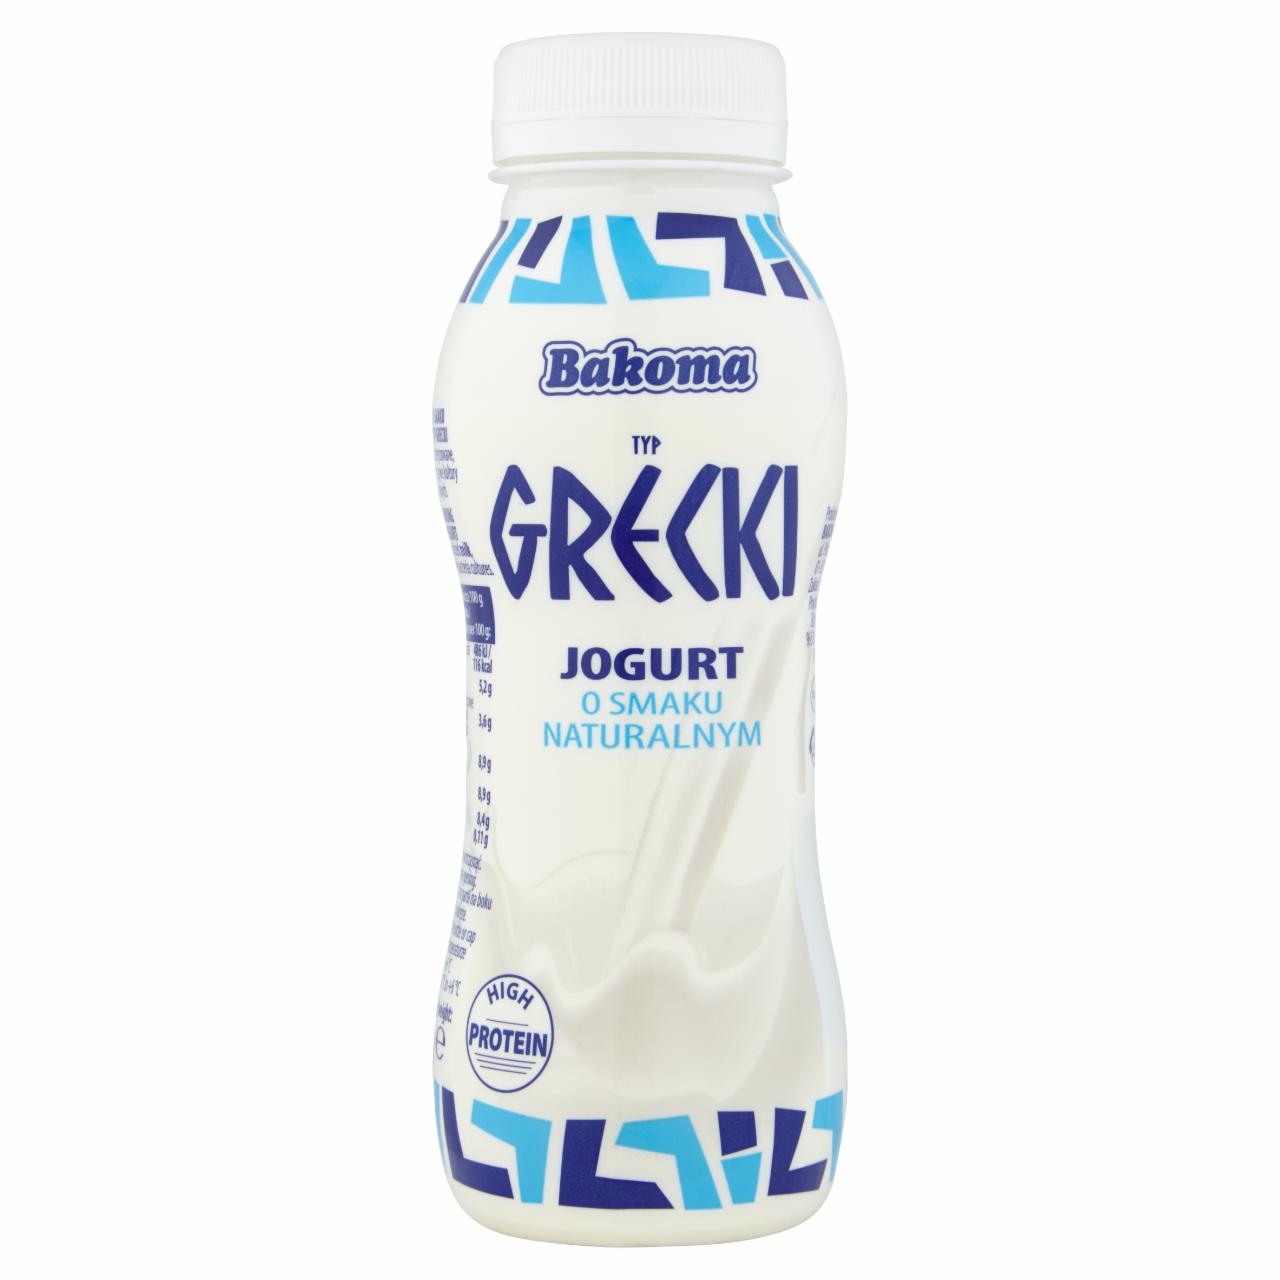 Zdjęcia - Bakoma Jogurt typ grecki o smaku naturalnym 230 g